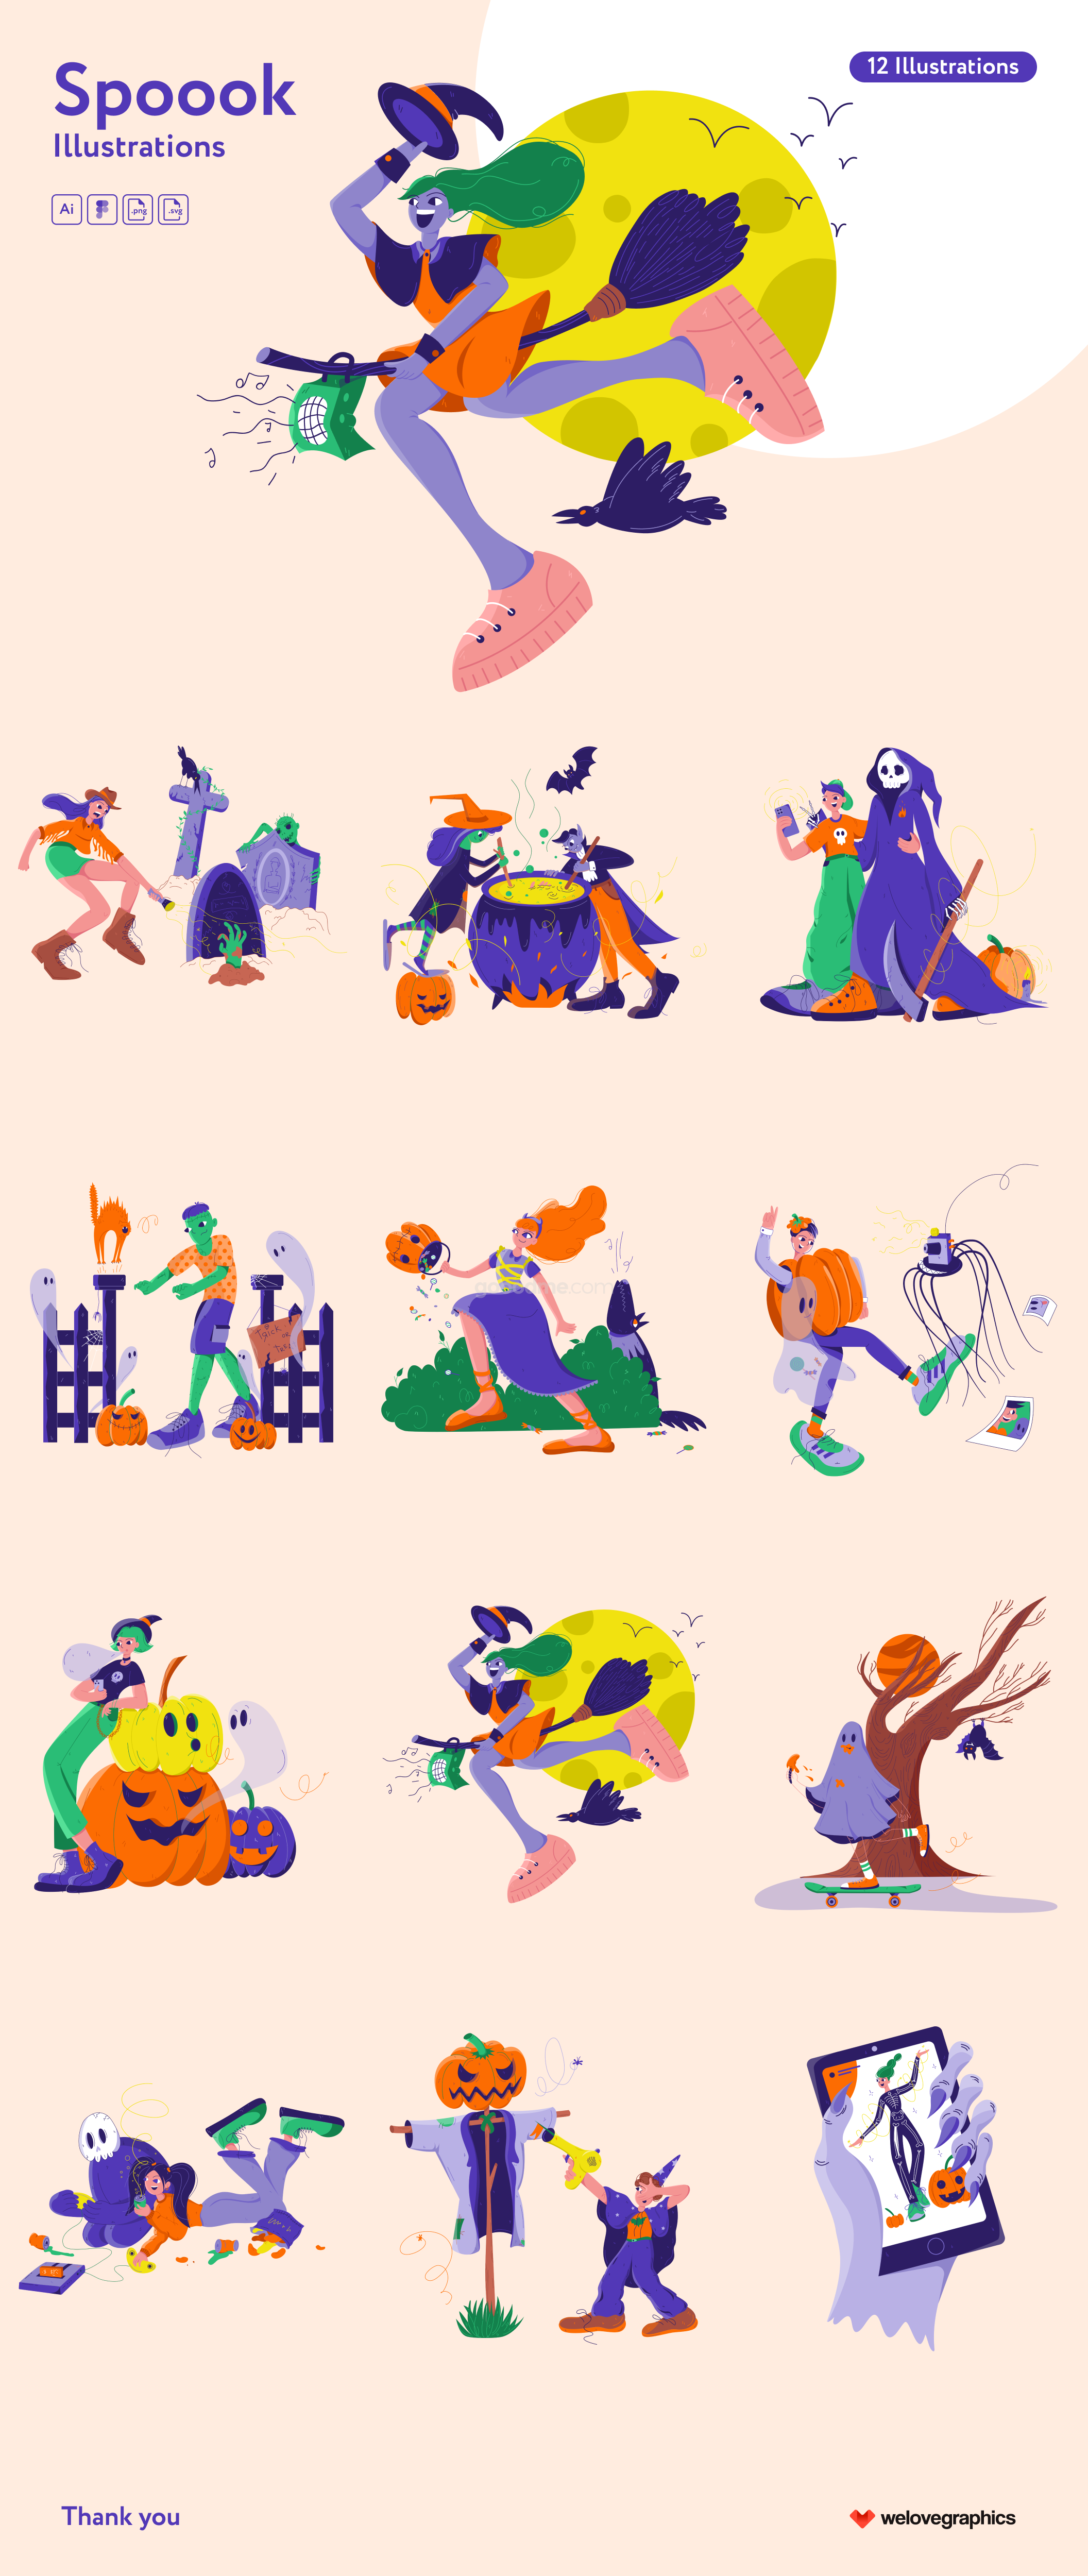 万圣节主题彩色矢量插图设计素材 Spoook Illustrations